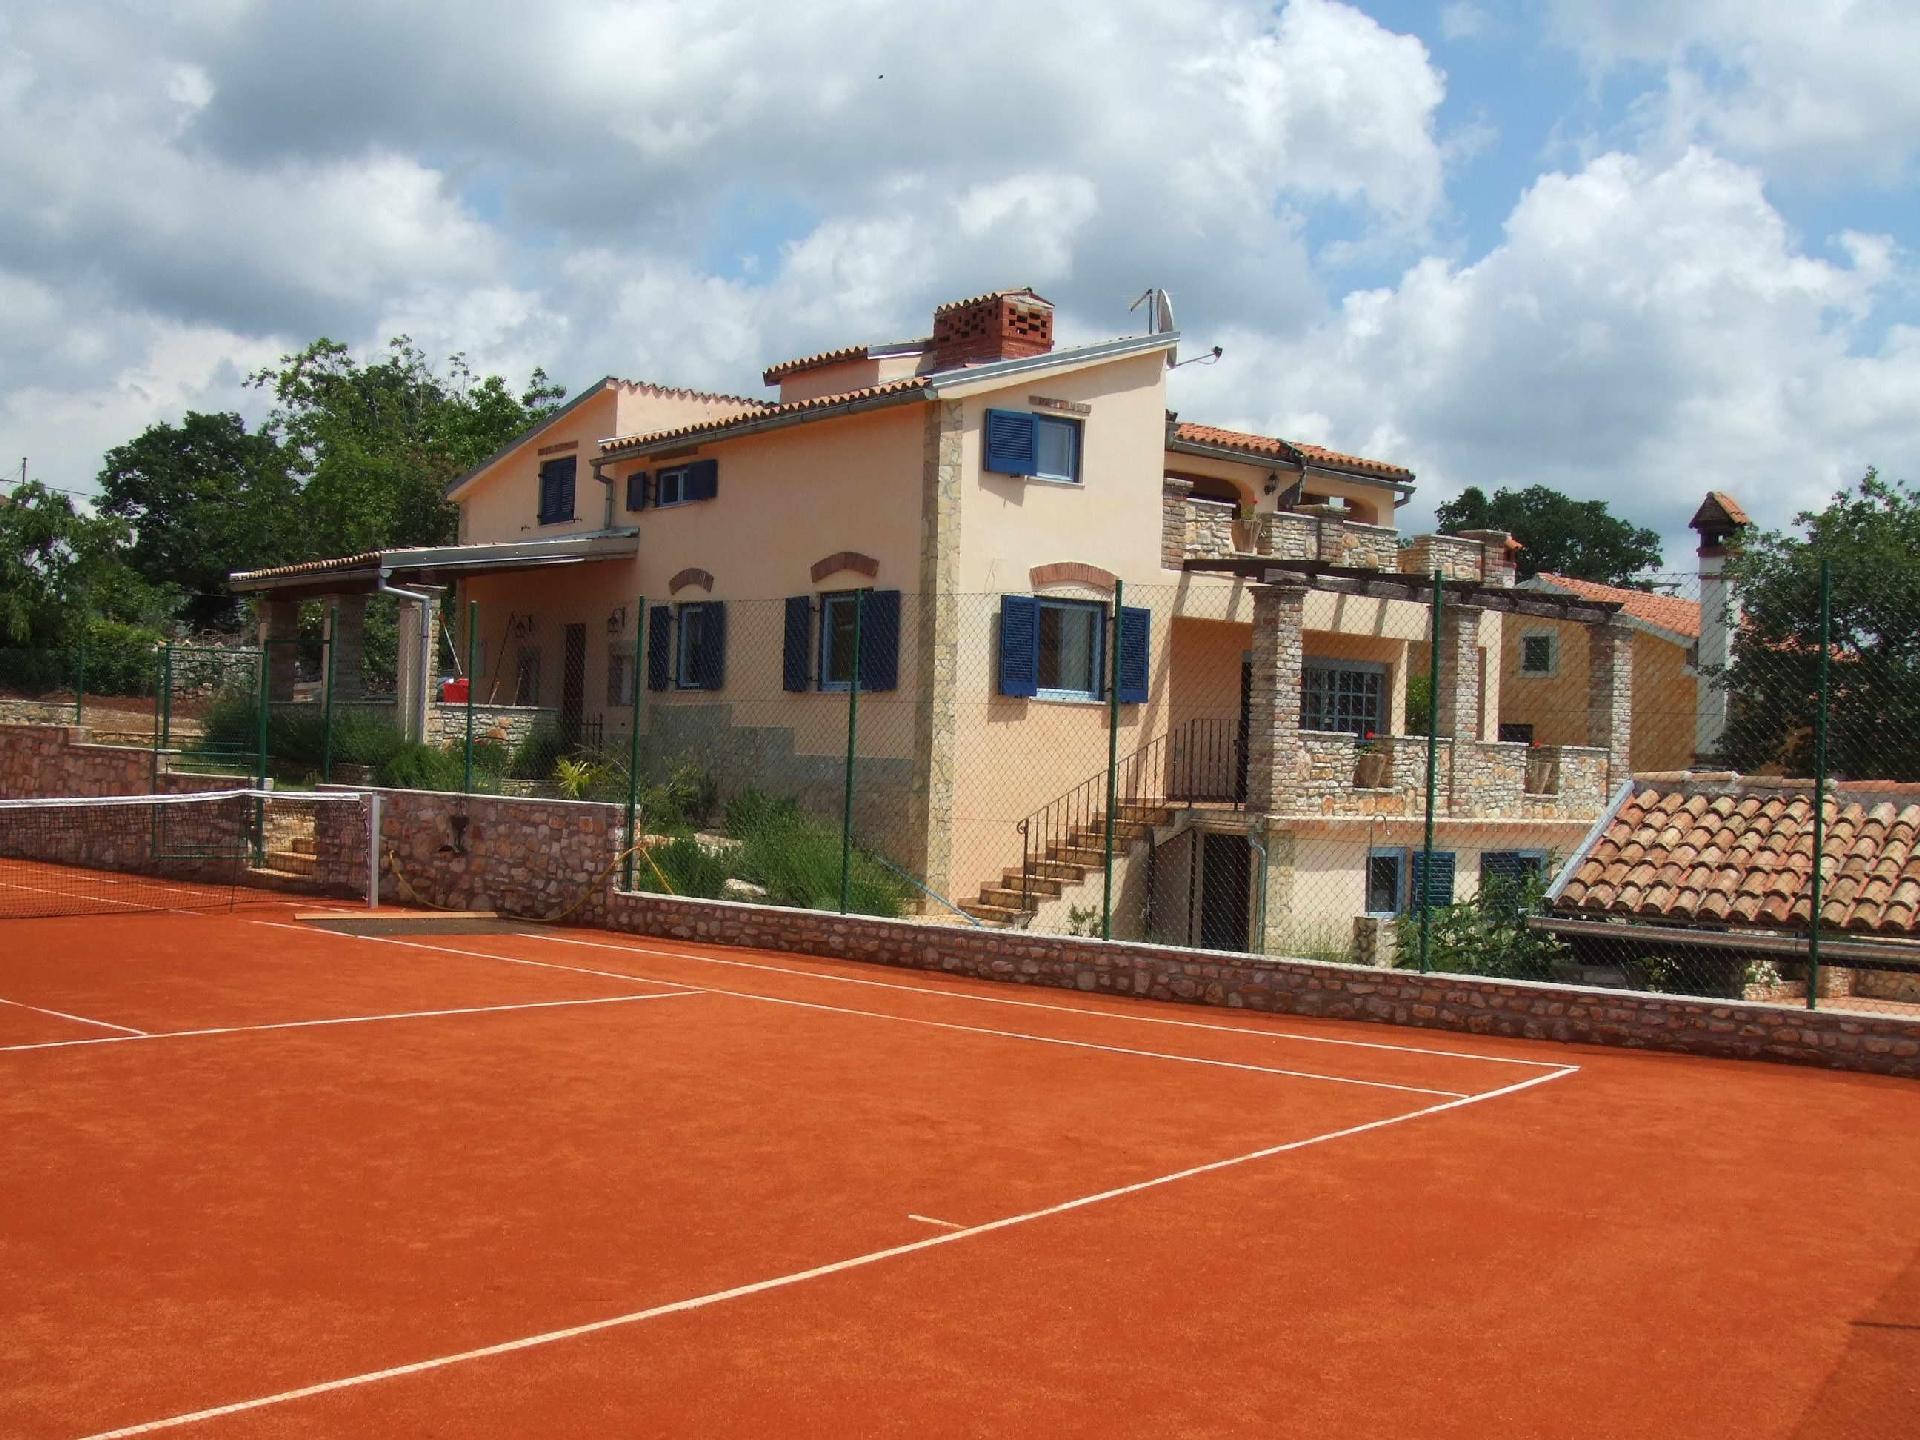  Ruhiggelegene Villa mit eigenem Tennisplatz und P Ferienhaus in Istrien